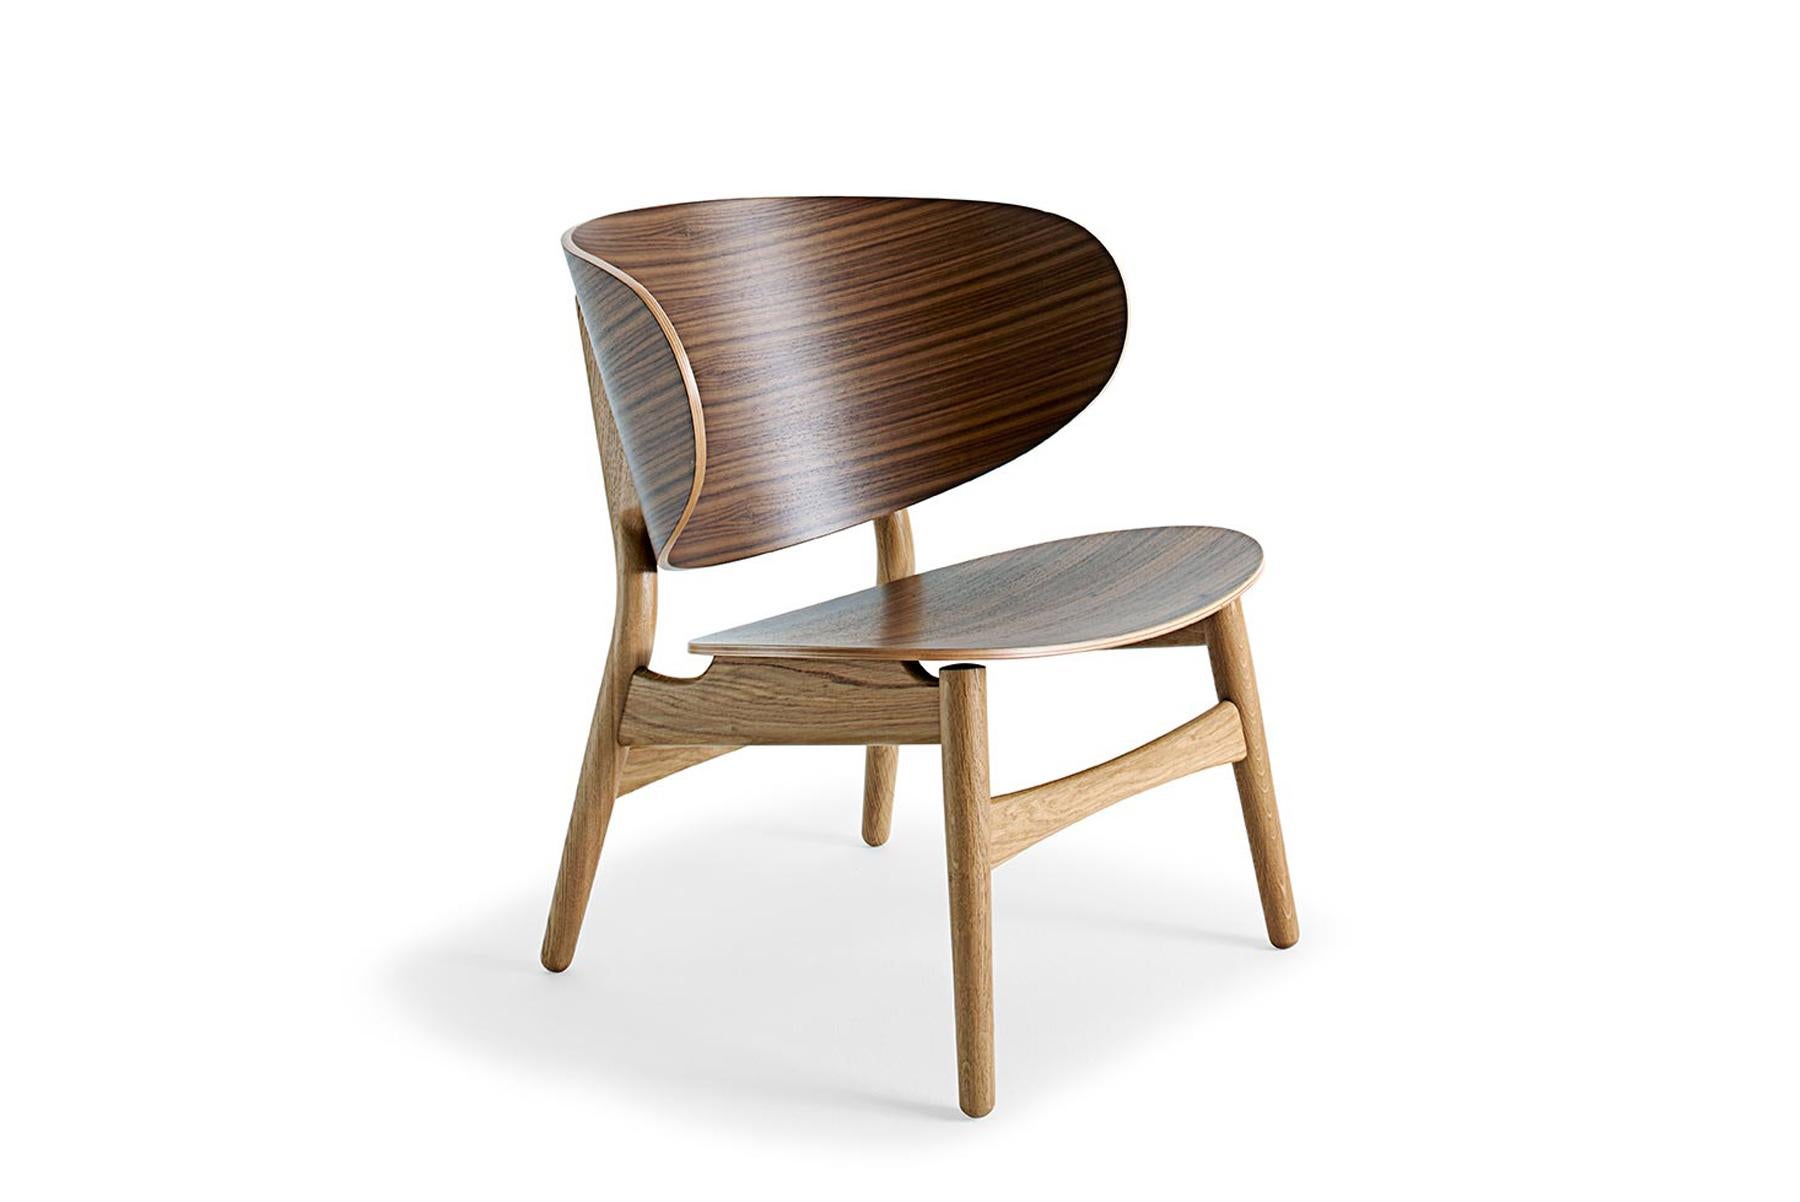 Conçue par Hans Wegner en 1948, la chaise coquille GE 1936 est devenue une icône du design moderne. Fabriquée en contreplaqué cintré avec une structure en chêne massif, la chaise est construite à la main dans l'usine Getama de Gedsted, au Danemark,